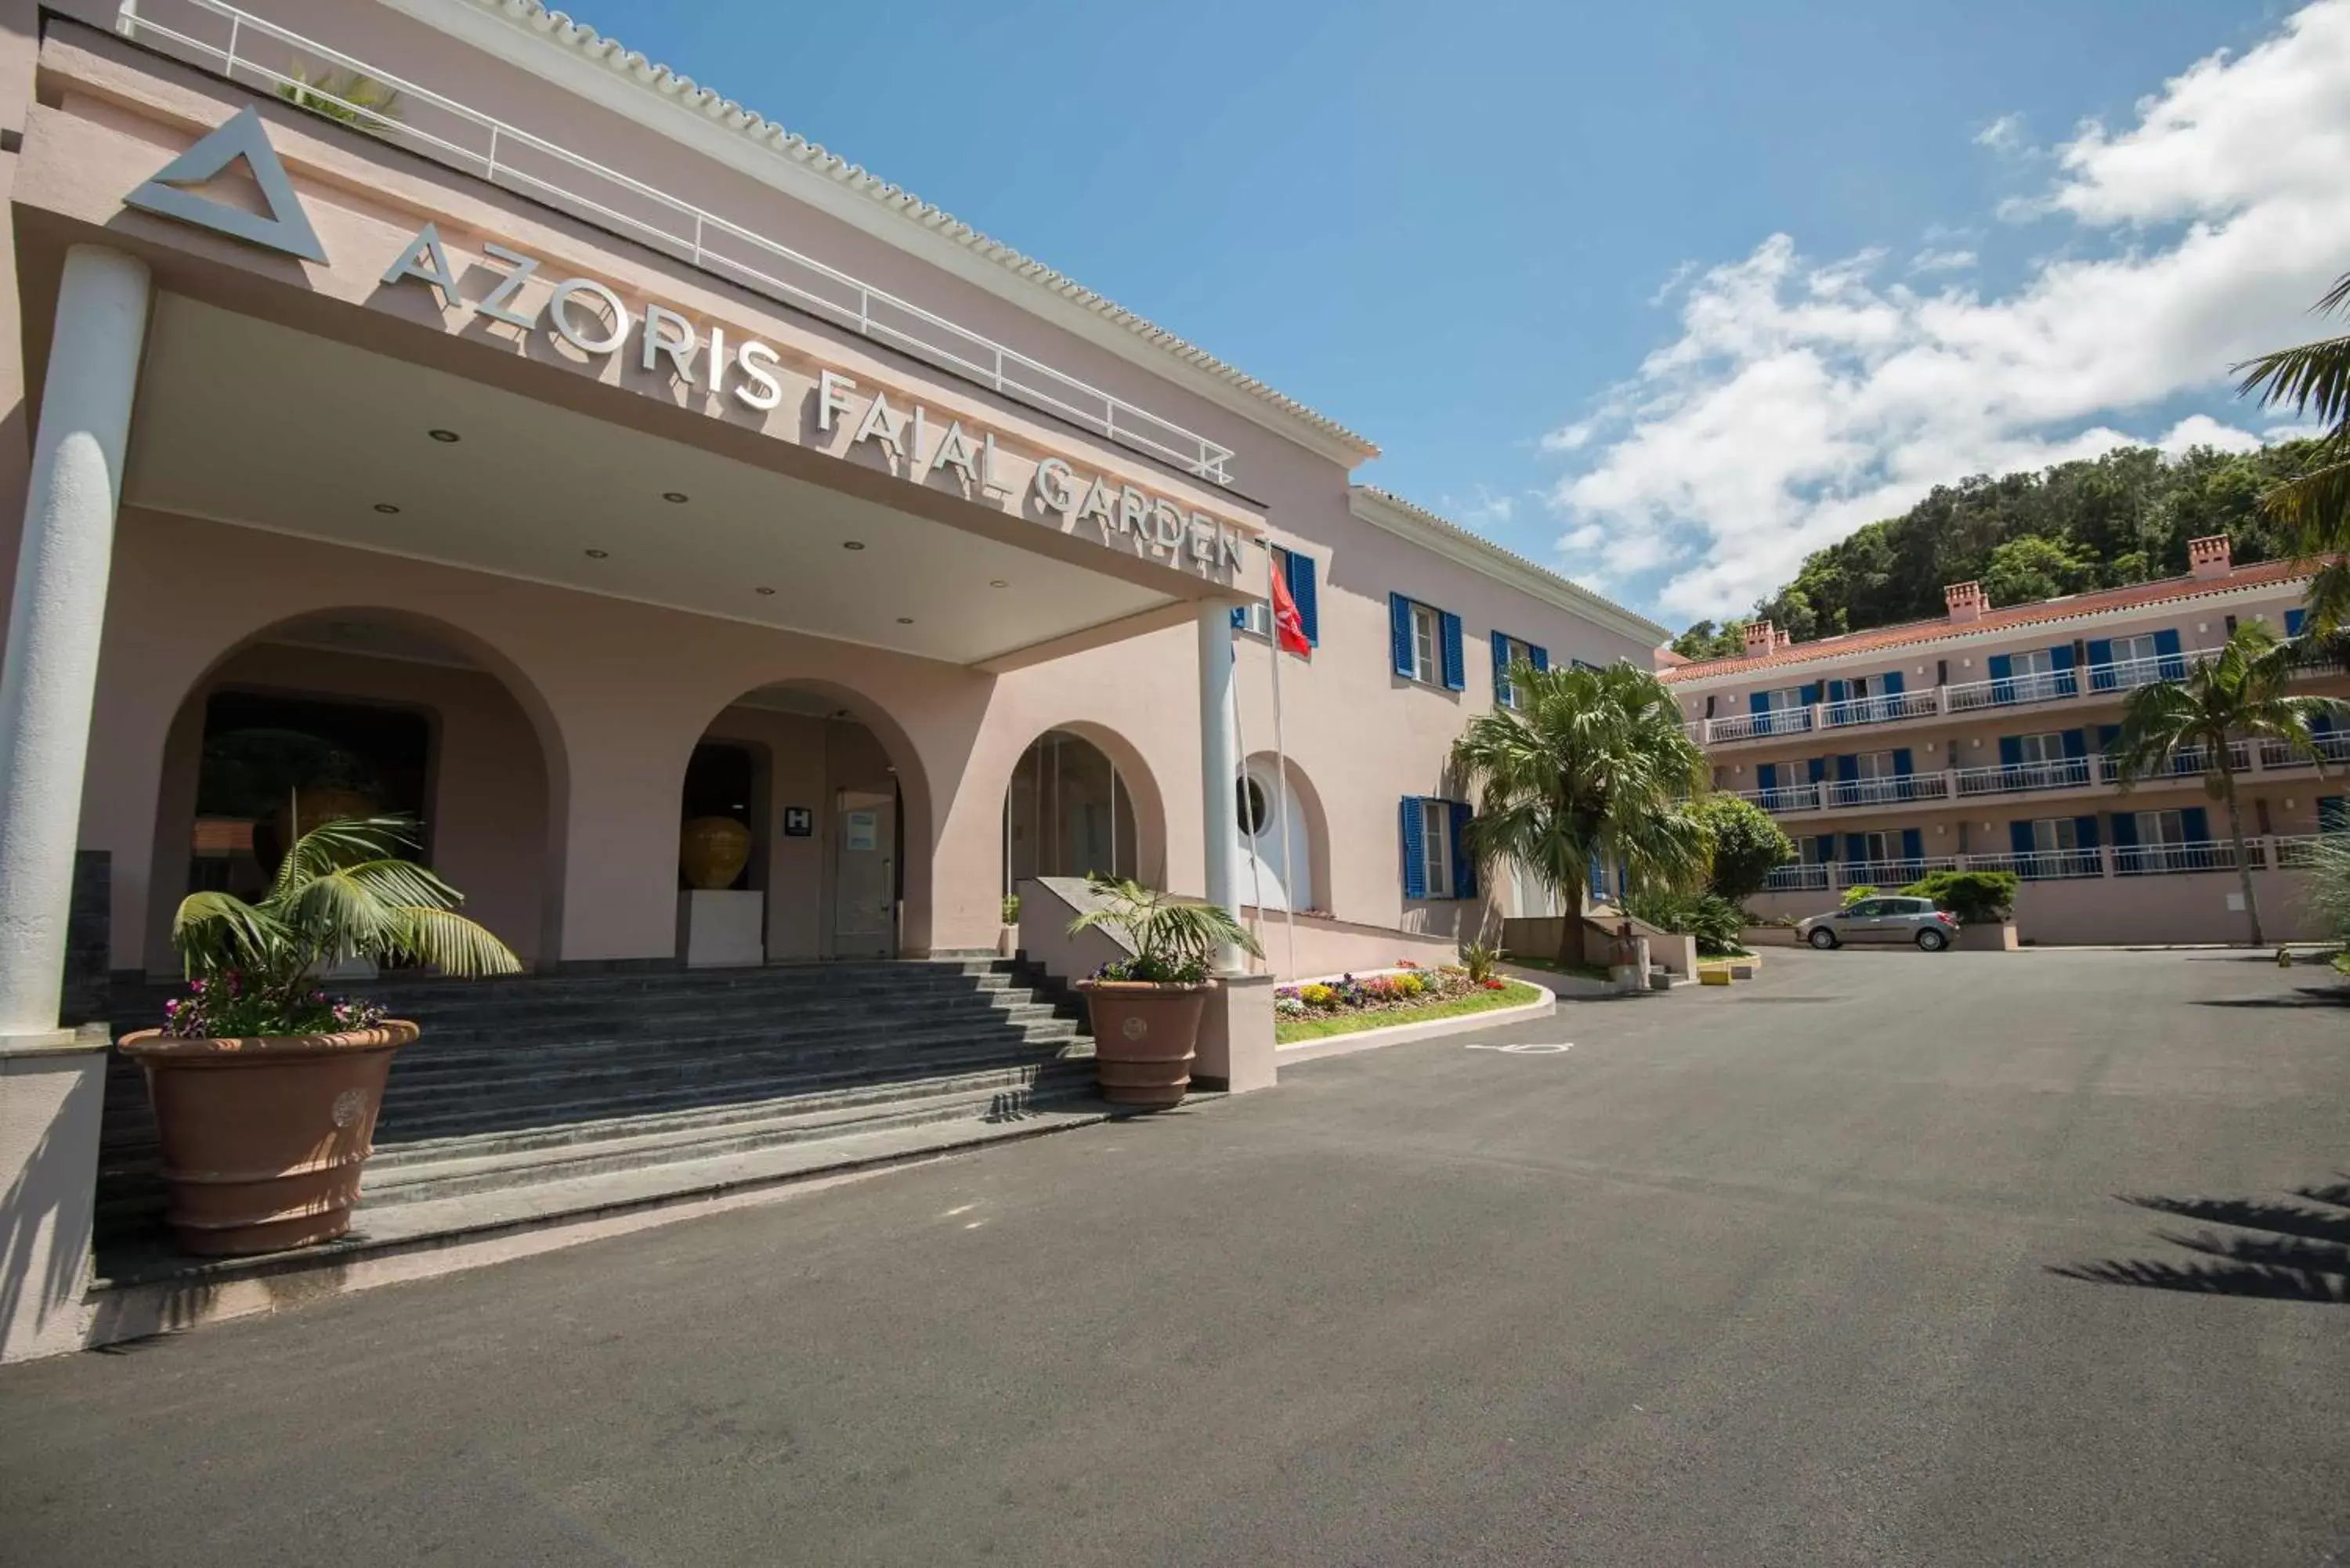 Facade/entrance, Property Building in Azoris Faial Garden – Resort Hotel